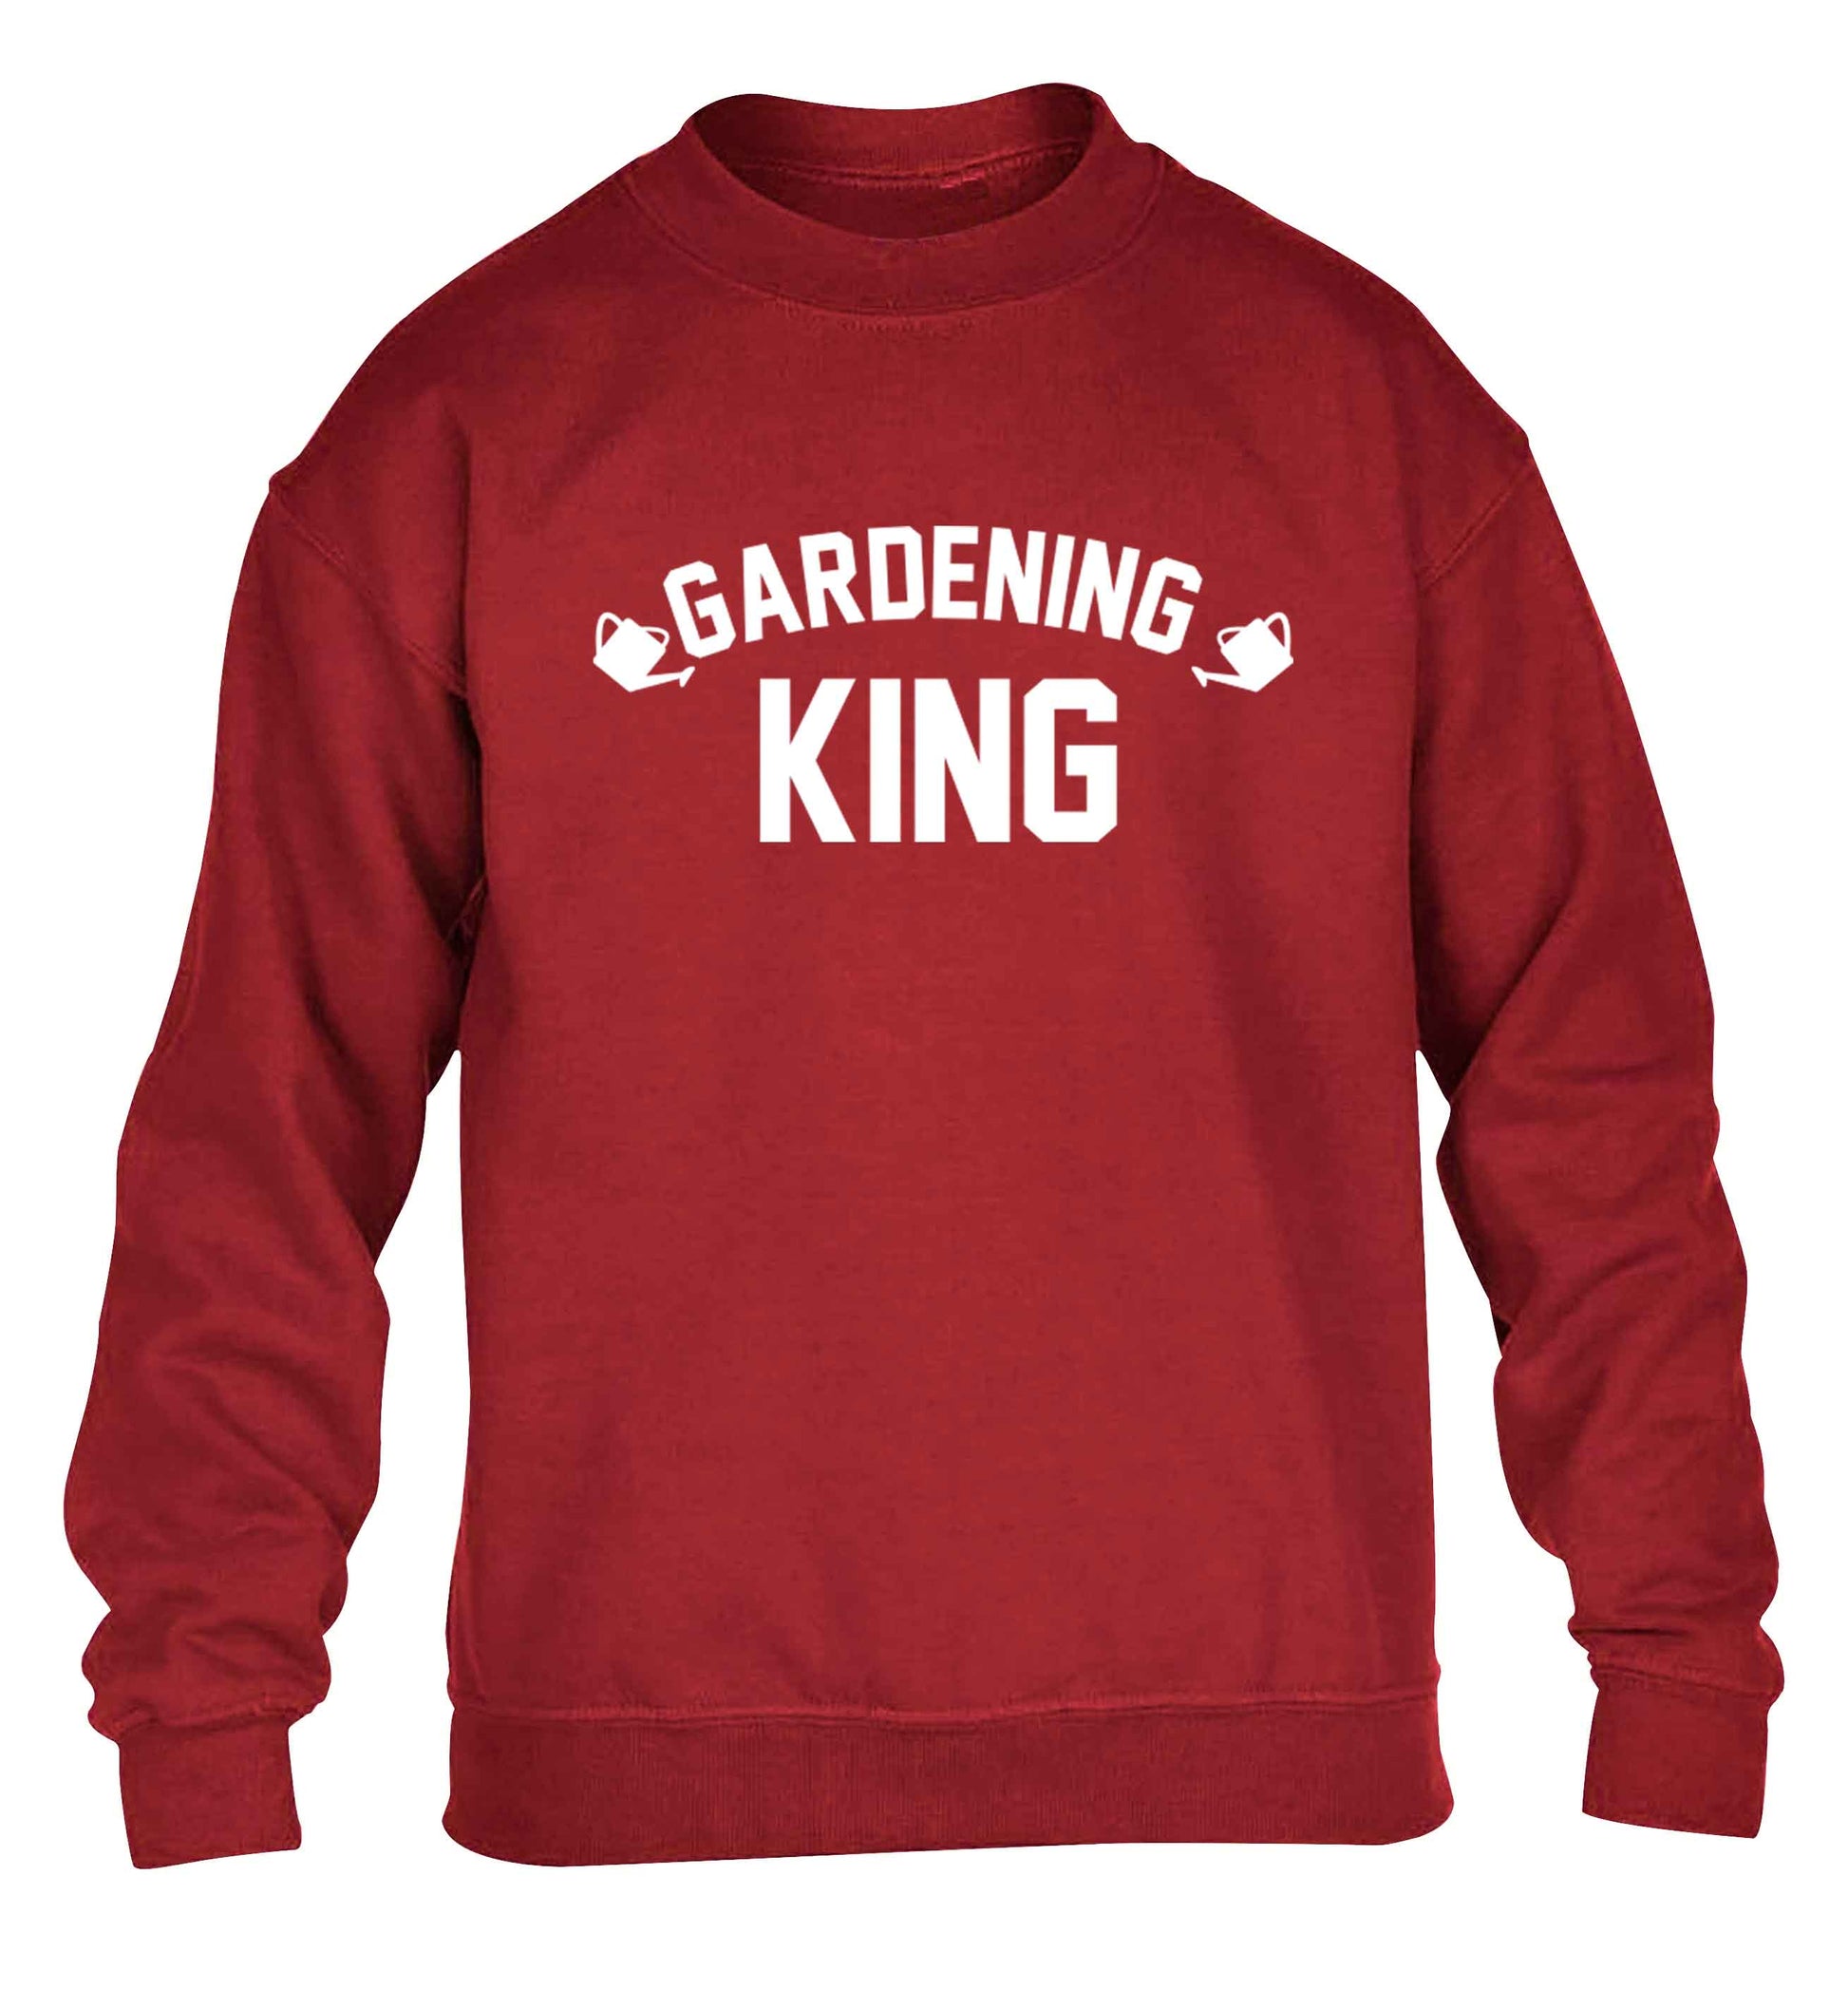 Gardening king children's grey sweater 12-13 Years